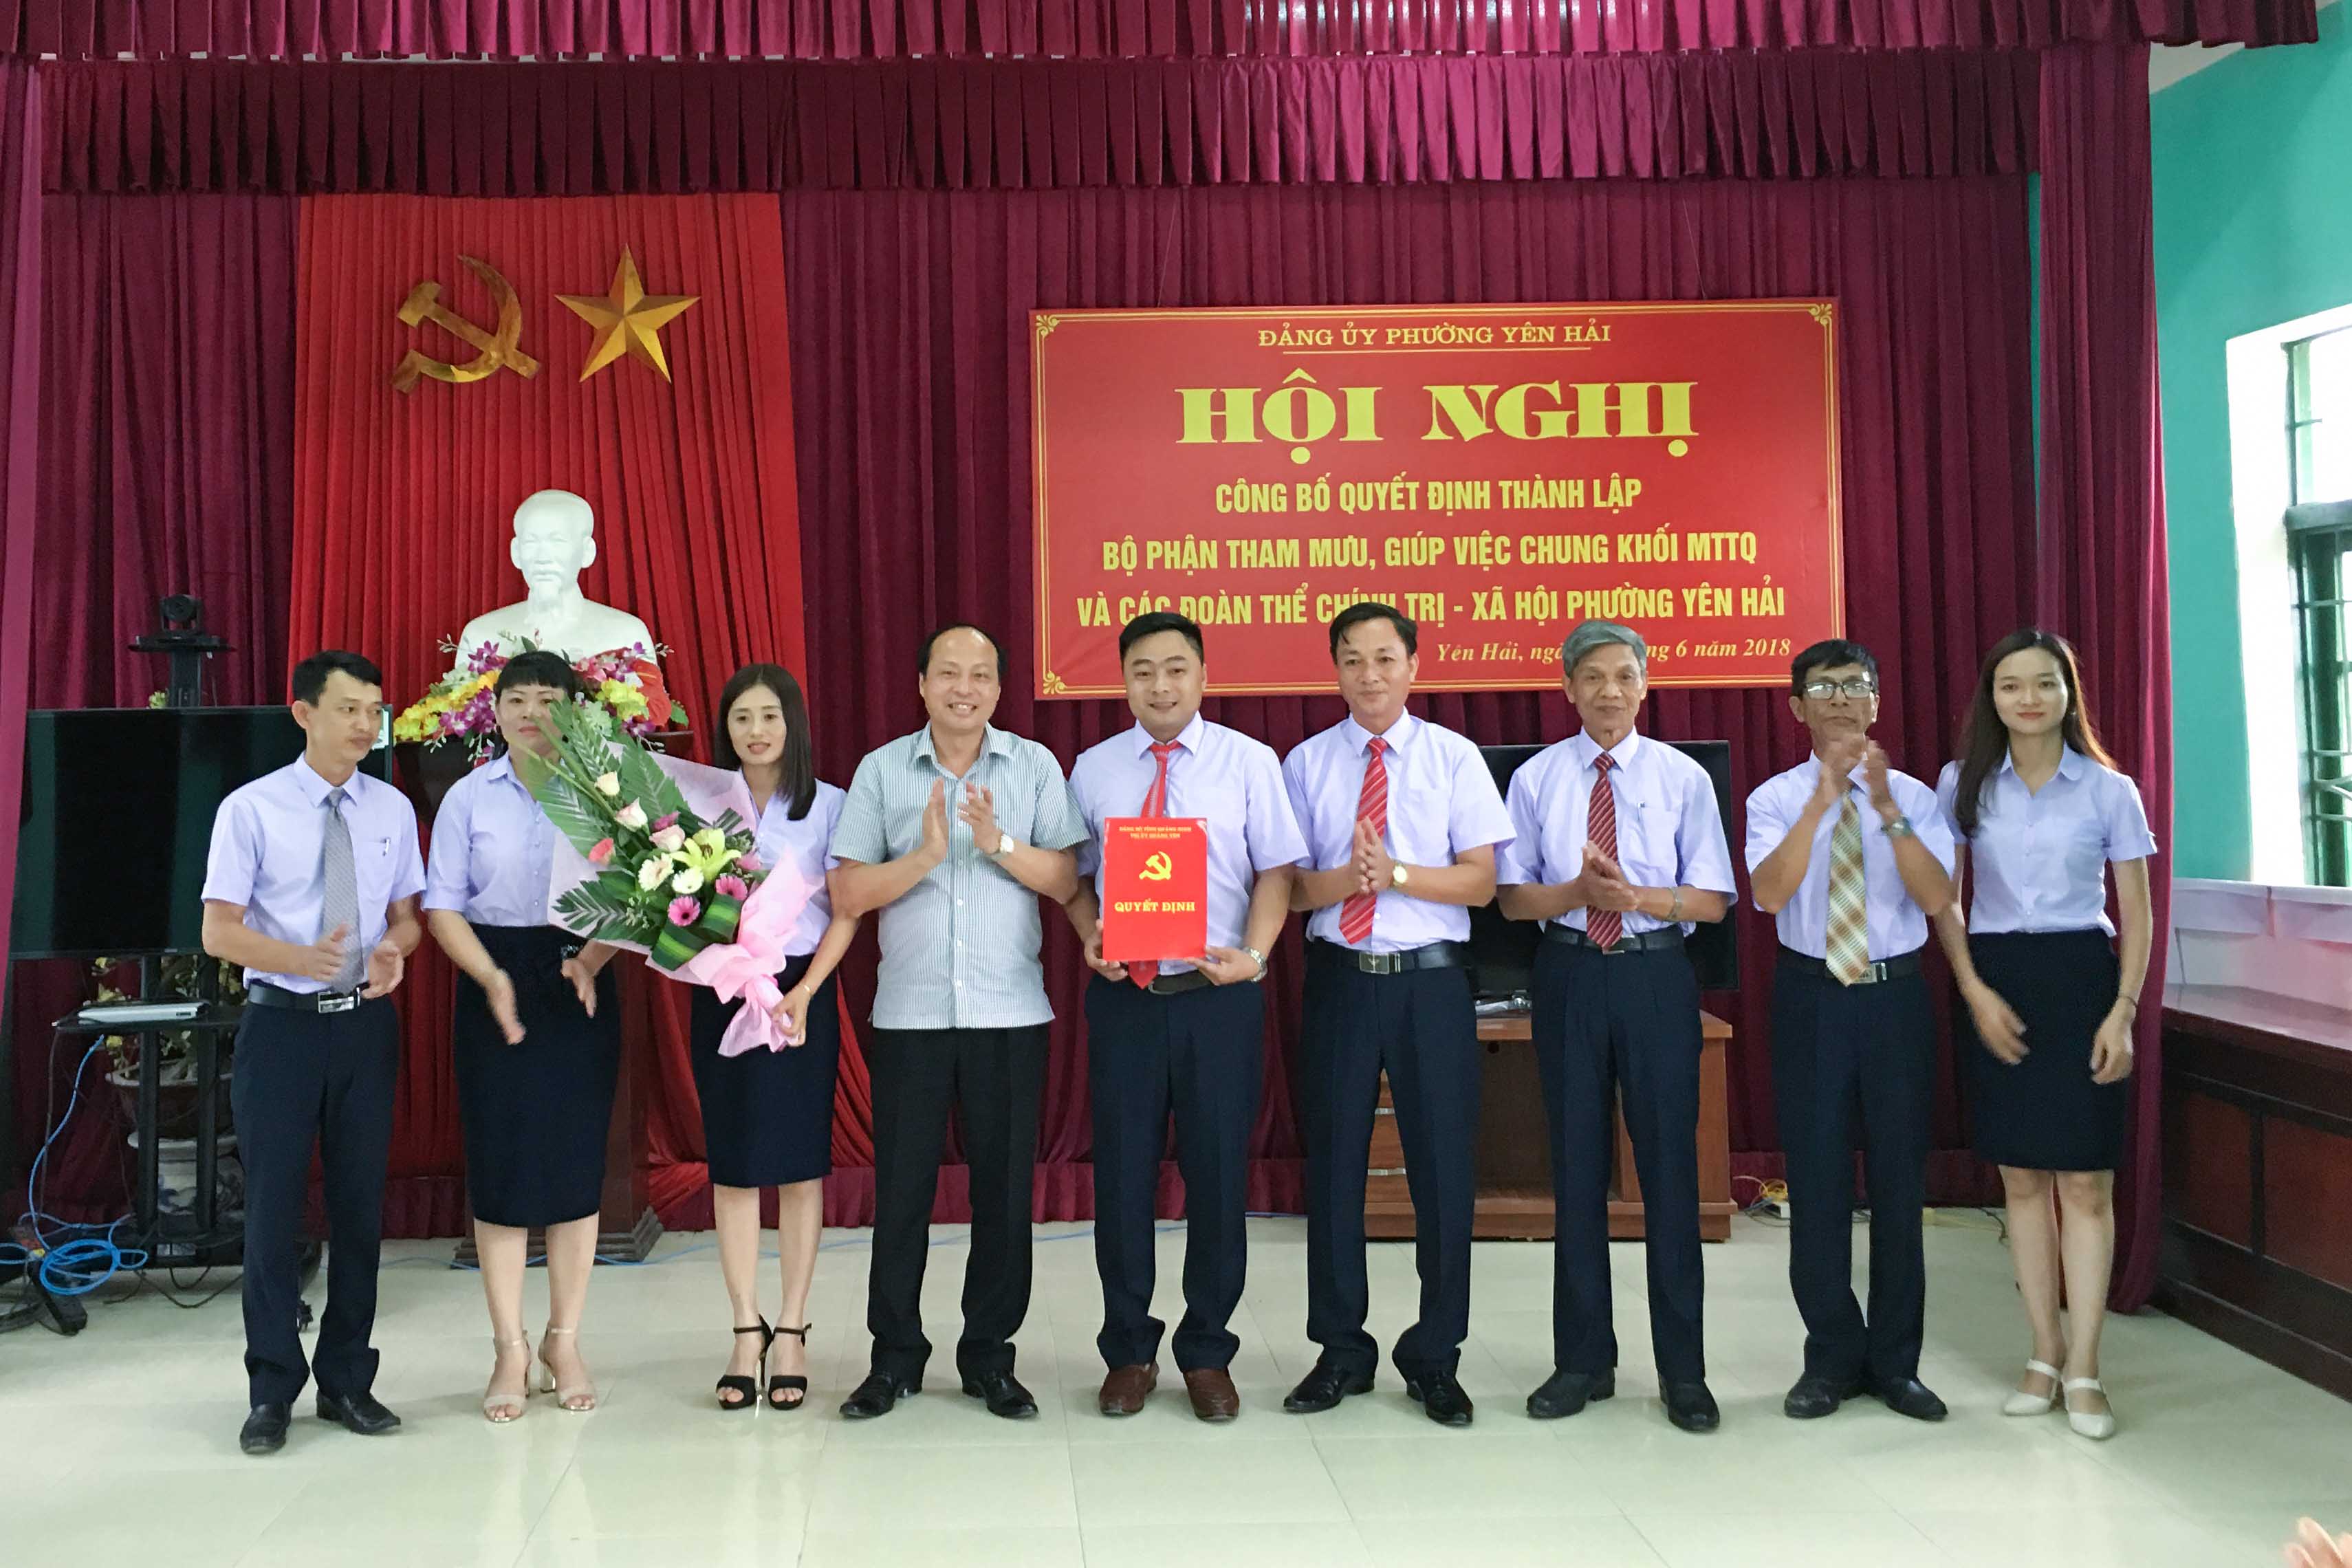 Ra mắt Bộ phận tham mưu giúp việc chung cho Khối MTTQ và các đoàn thể chính trị phường Yên Hải